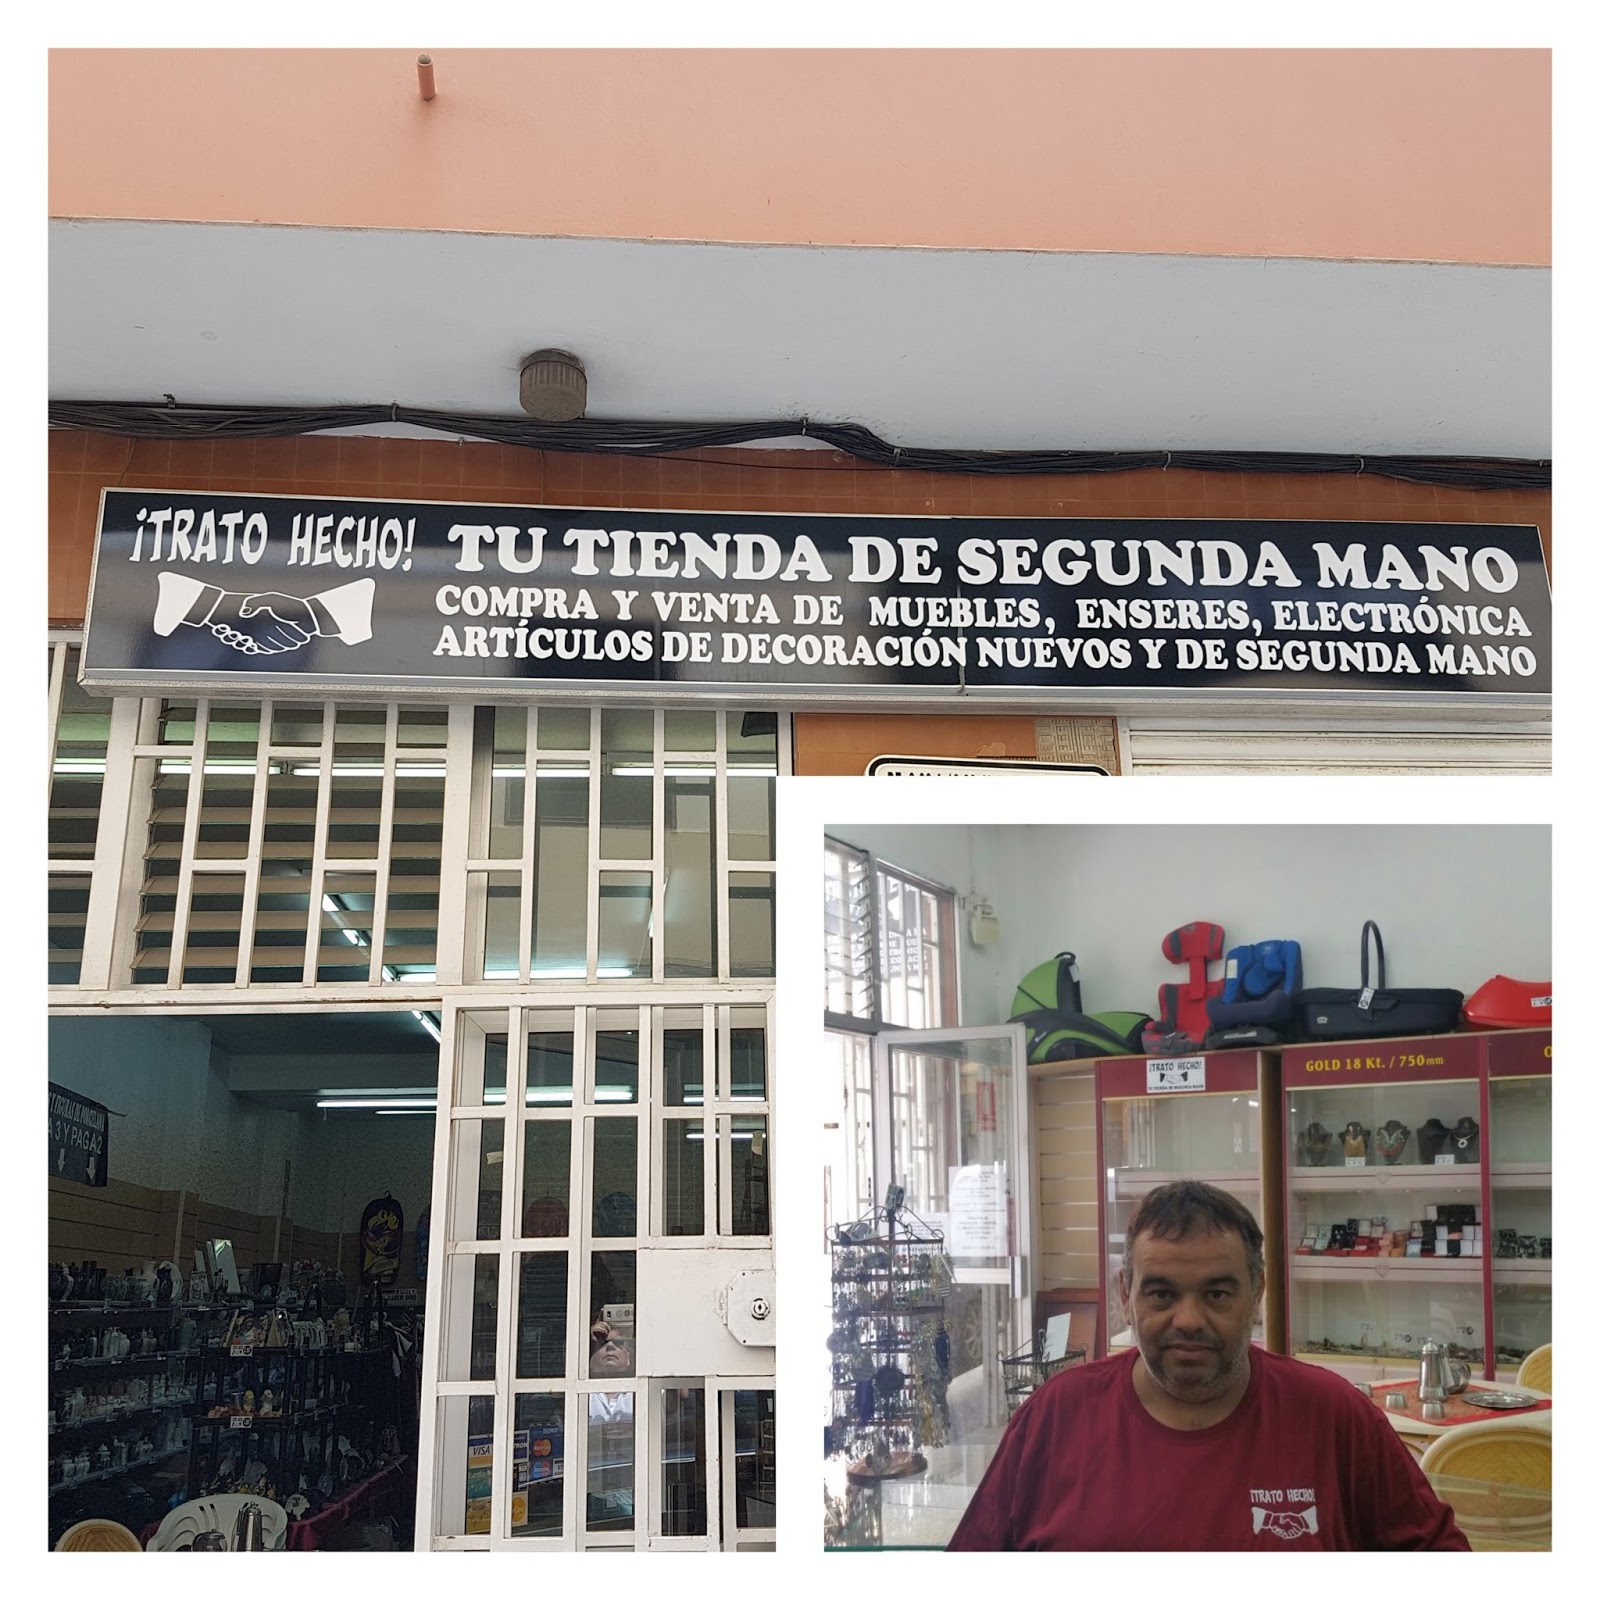 Trato Hecho" la tienda de segunda mano sus puertas en San | Telde Libre